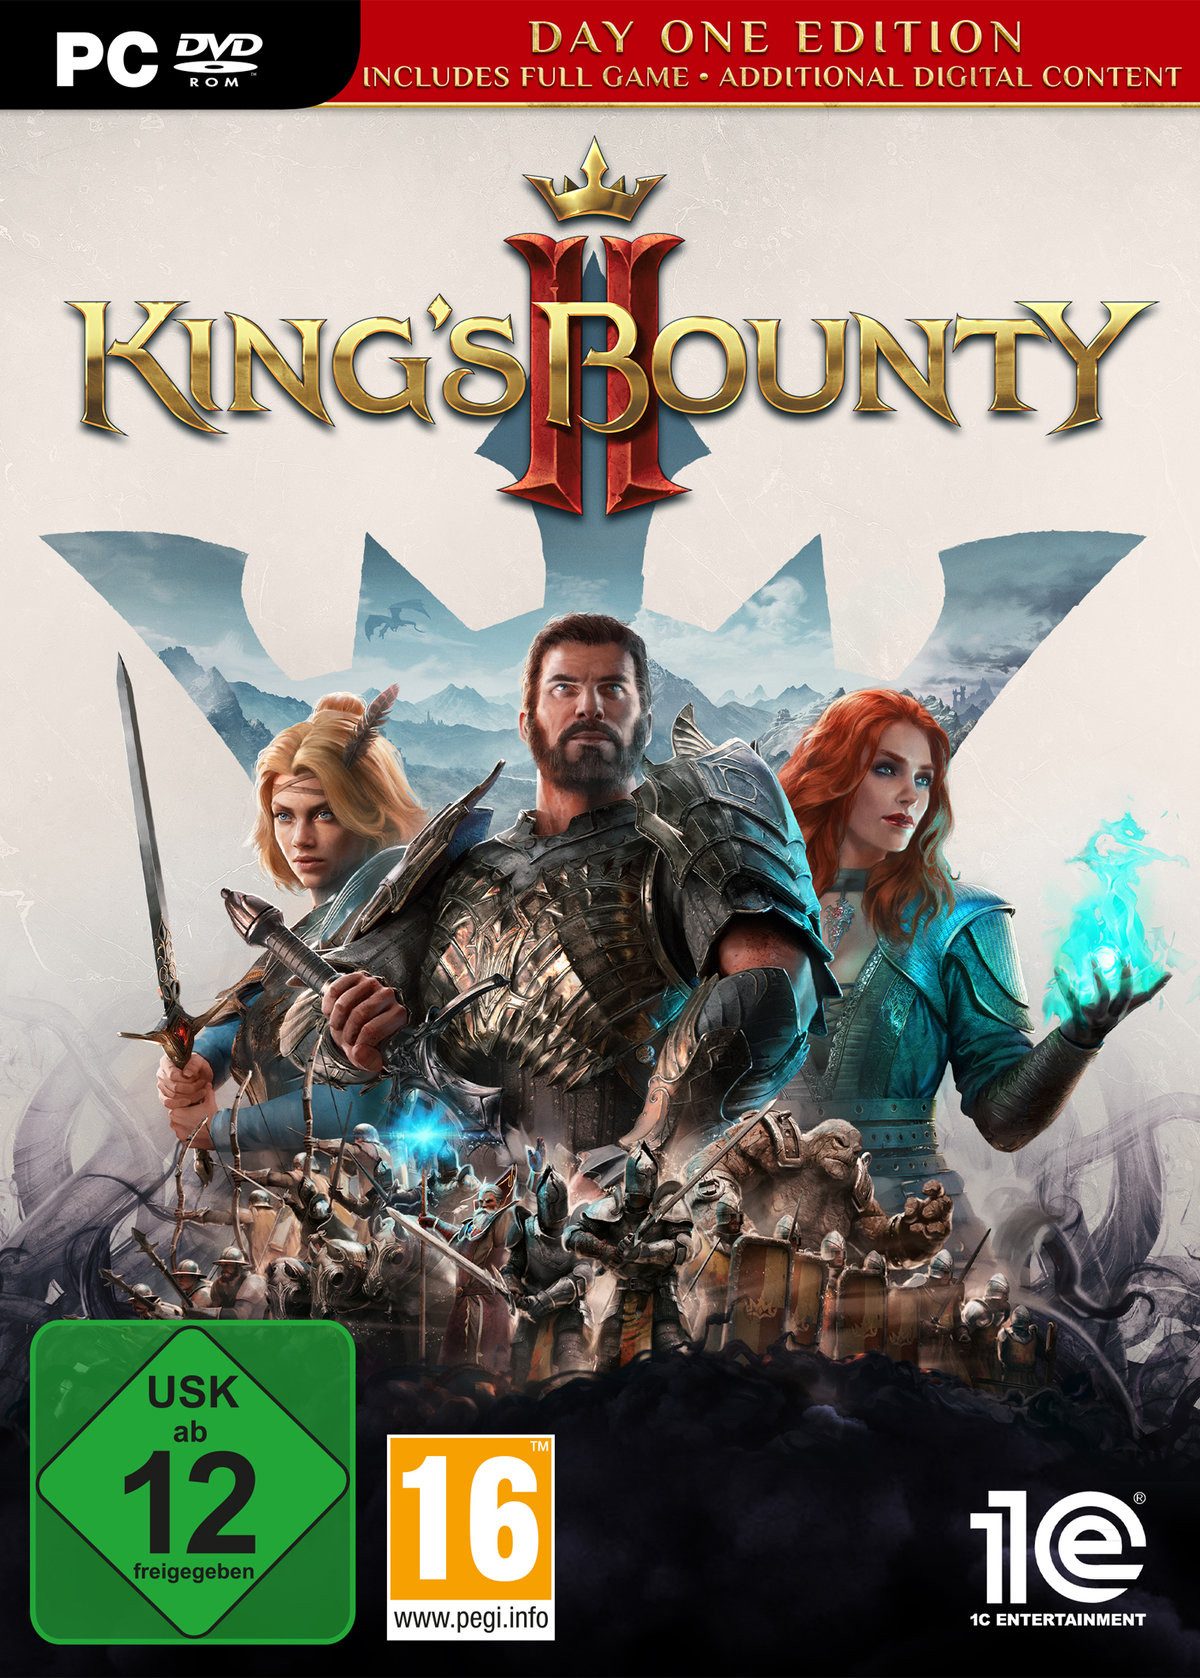 King's Bounty II PC